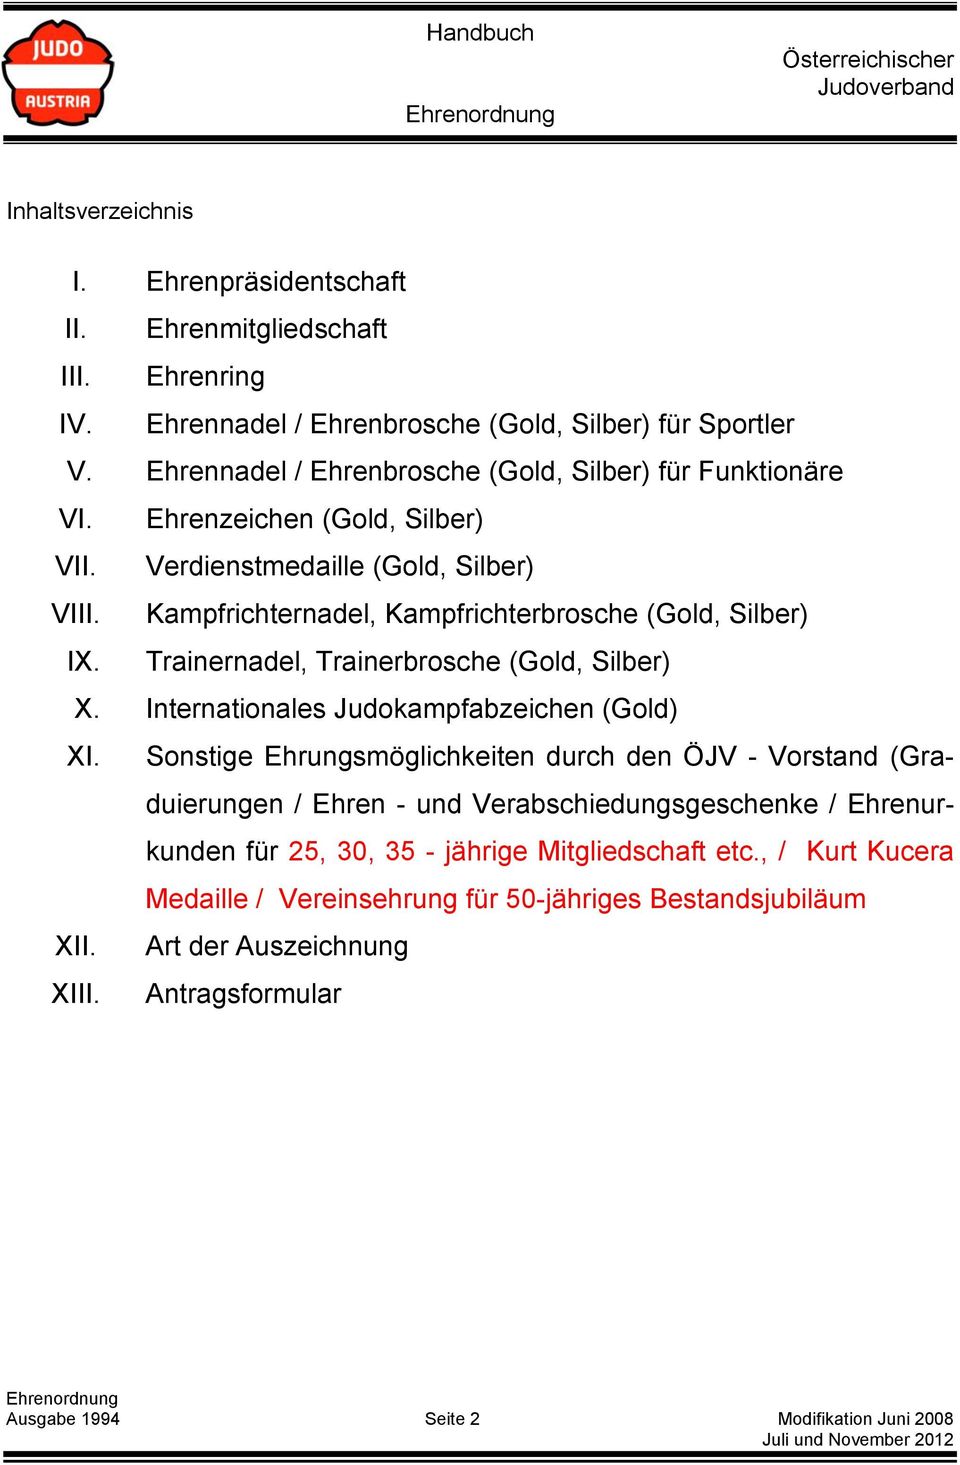 Trainernadel, Trainerbrosche (Gold, Silber) X. Internationales Judokampfabzeichen (Gold) XI.